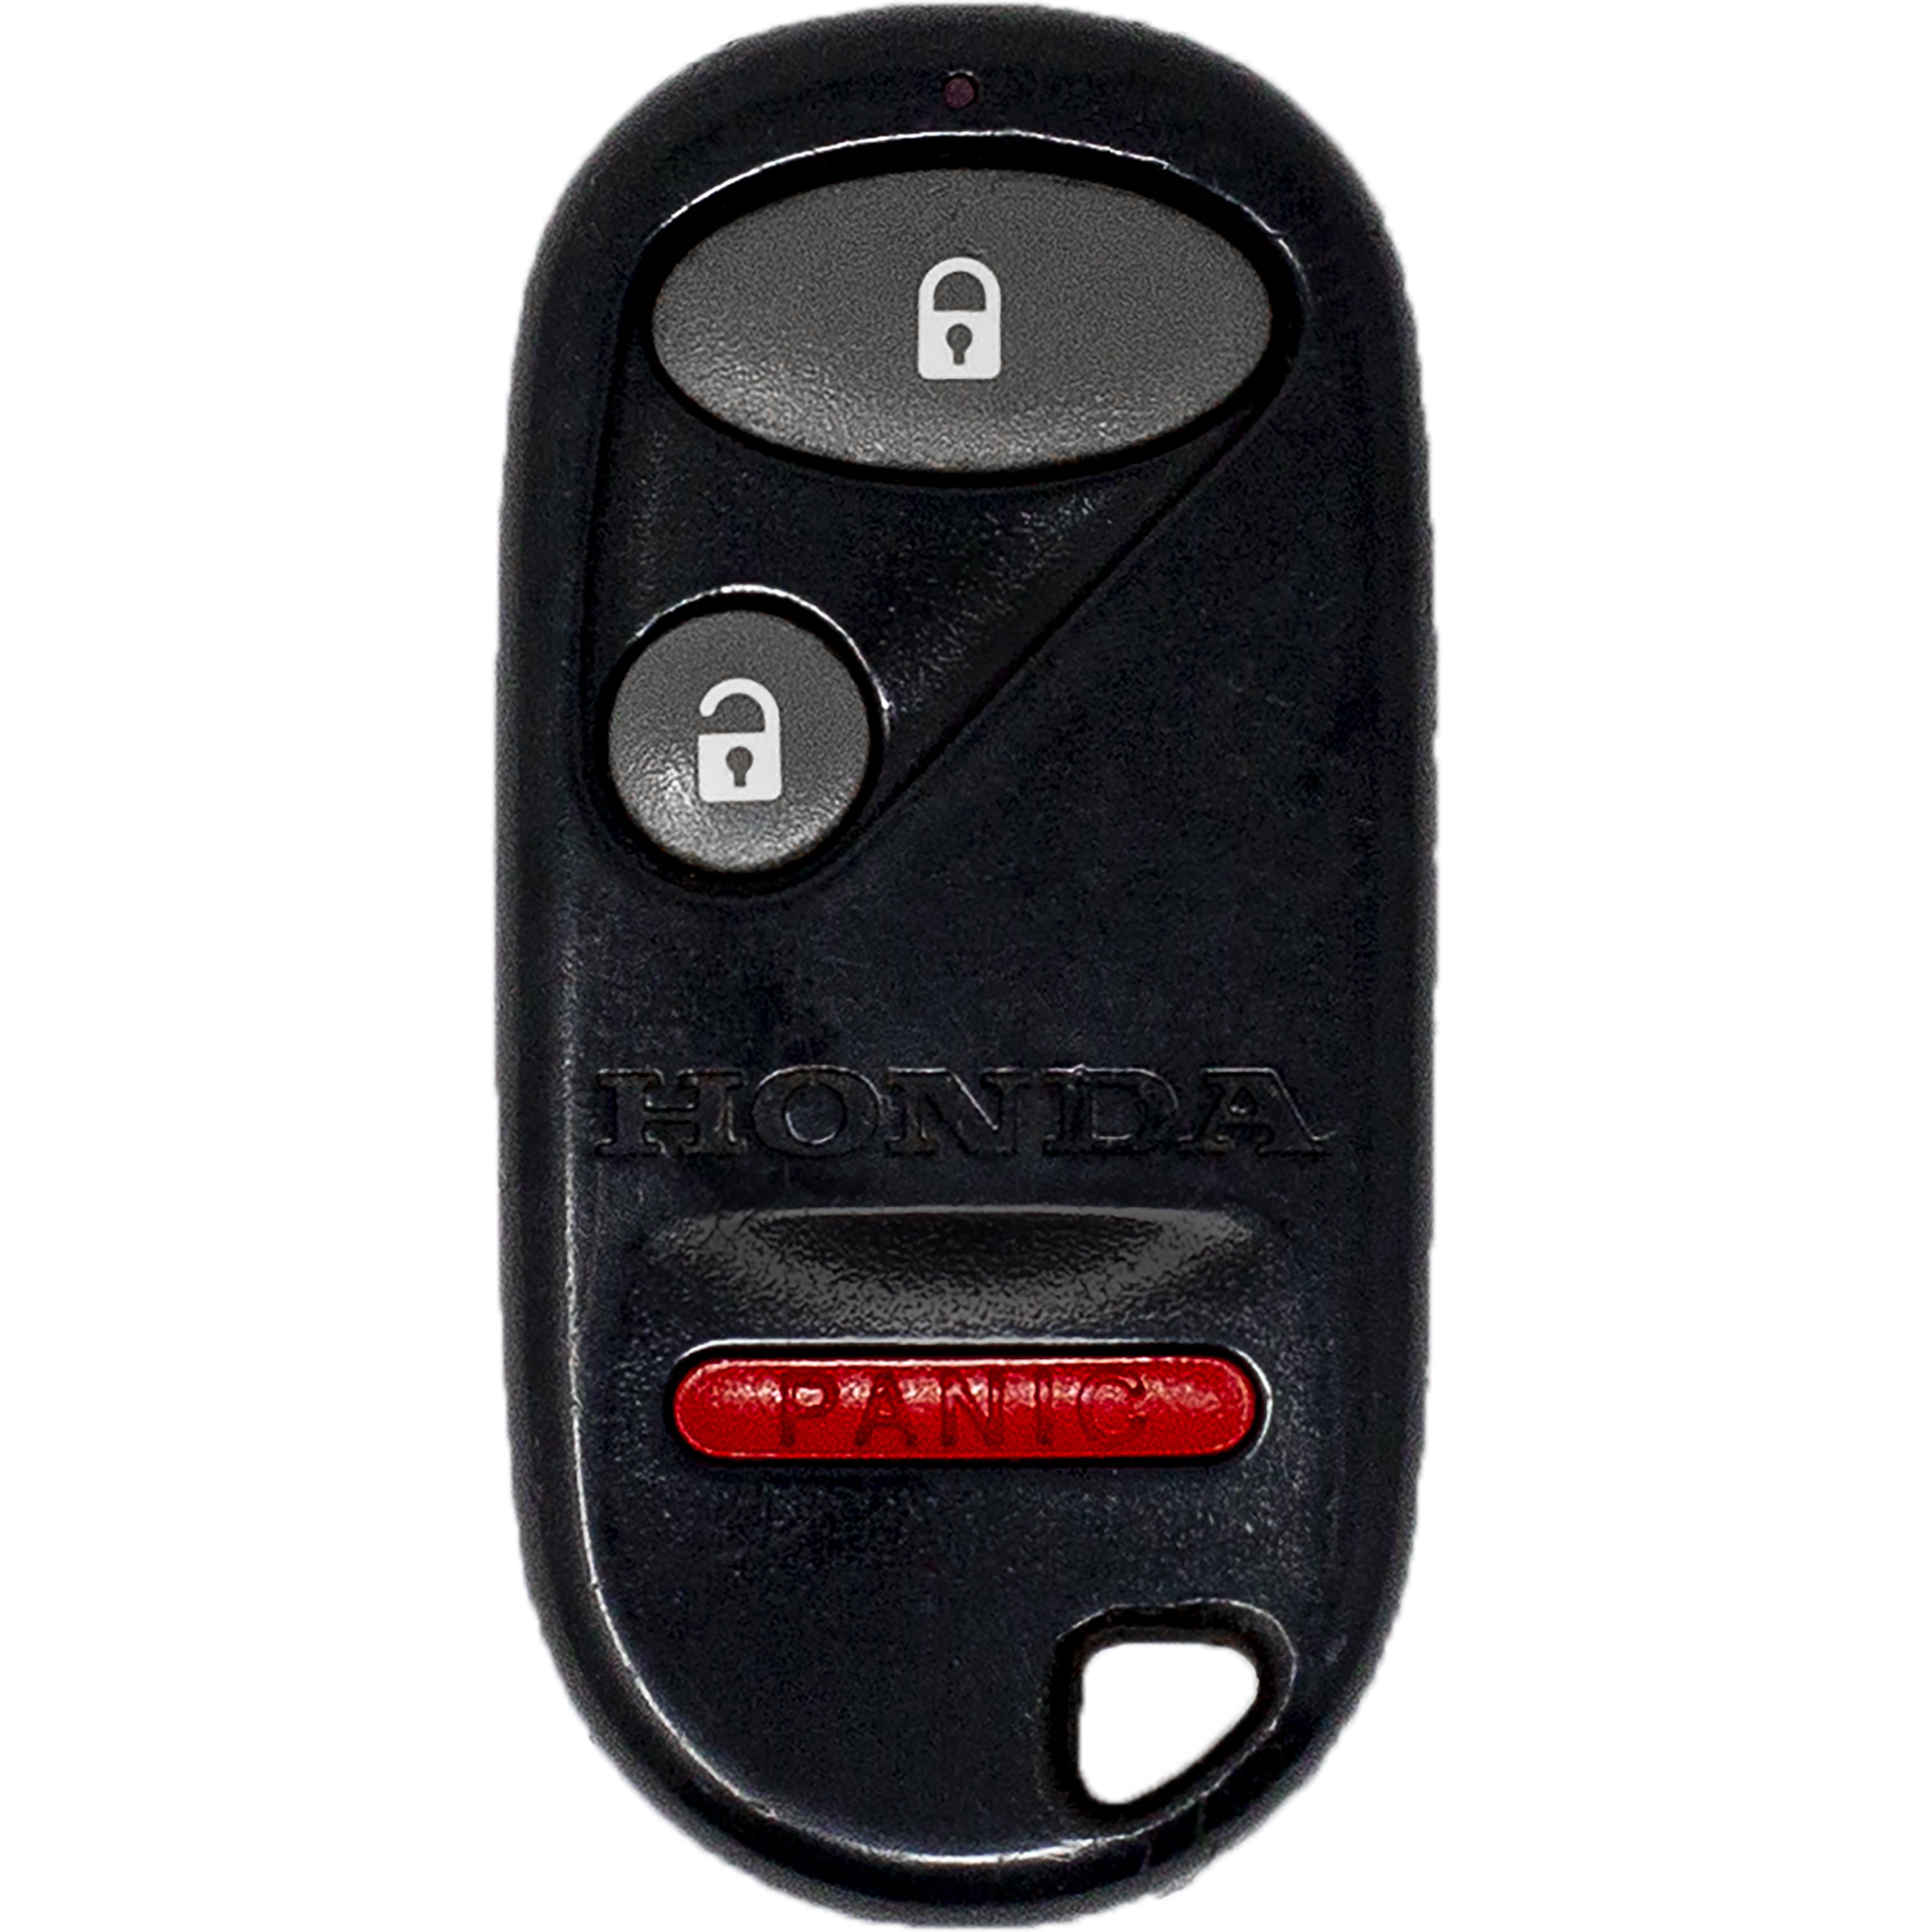 Mode Auto Remote Key Fob Abdeckung Fall Halter Schutz Für 5 7